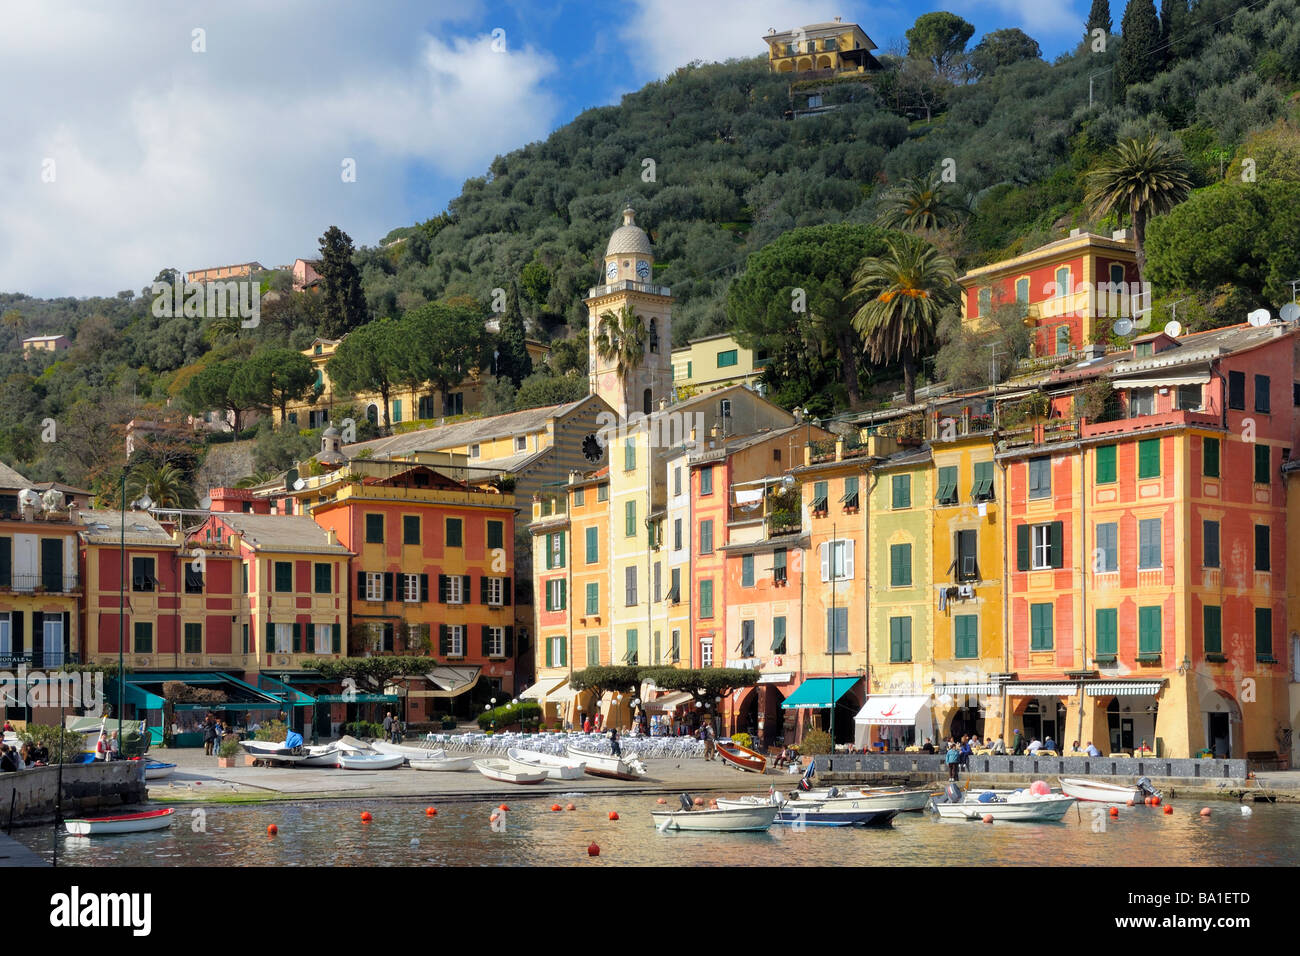 Der Hafen und die Stadt Plaza in der mediterranen Stadt Portofino, Ligurien, Italien. Stockfoto